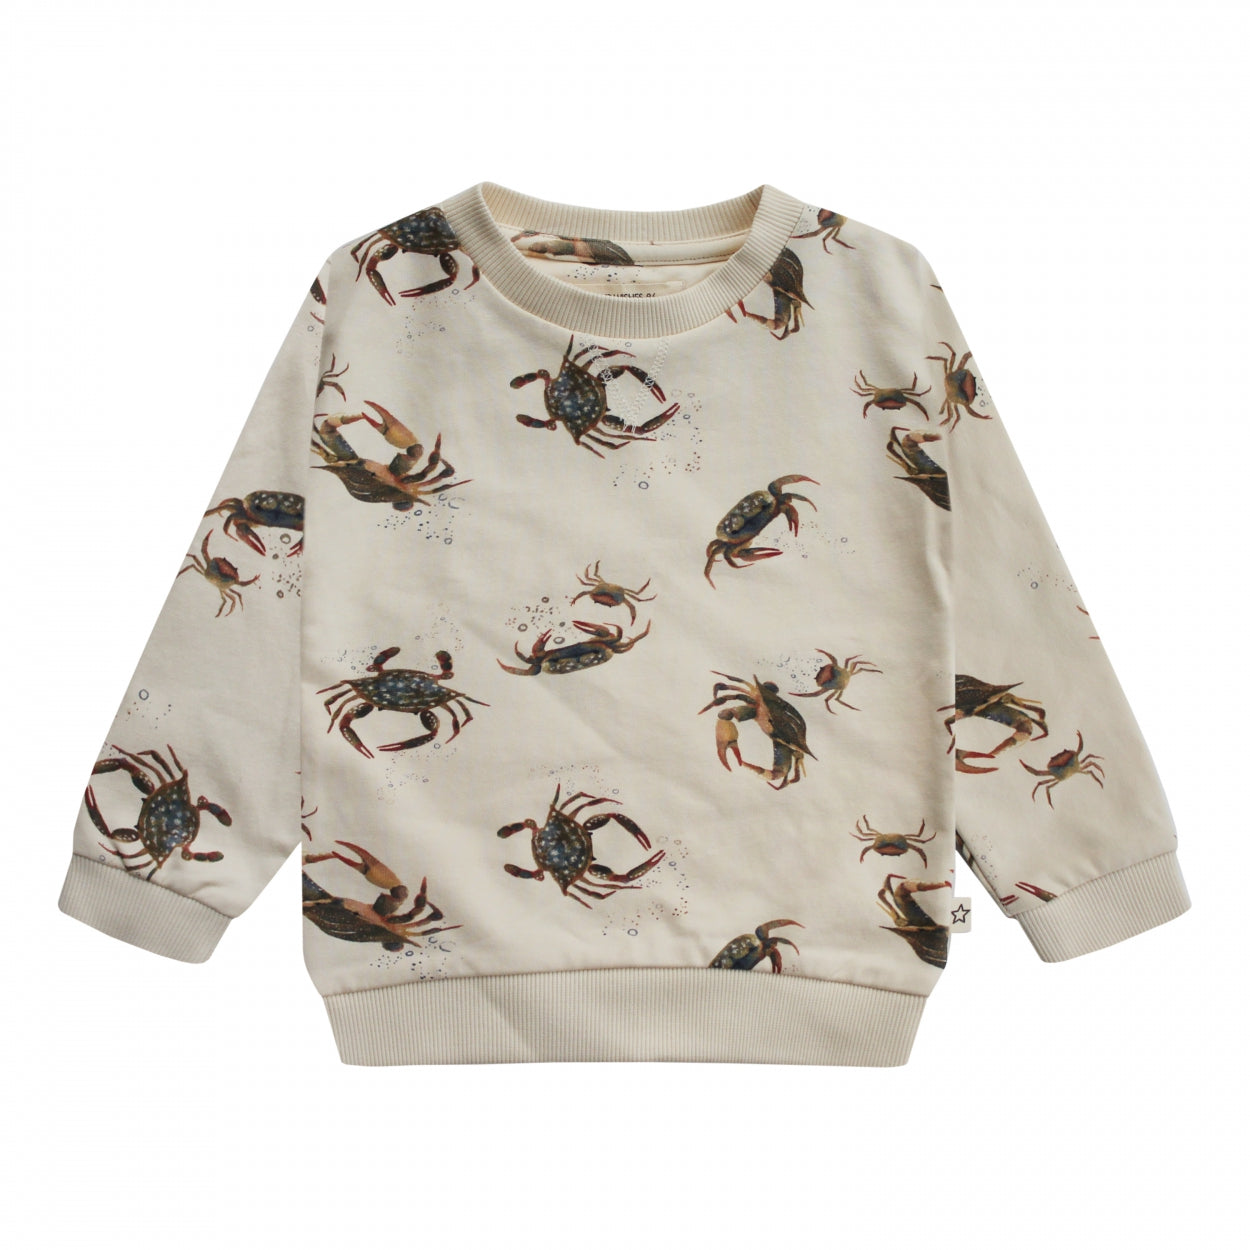 Jongens Sweater Crabs | Ciro van Your Wishes in de kleur Multicolor in maat 134/140.